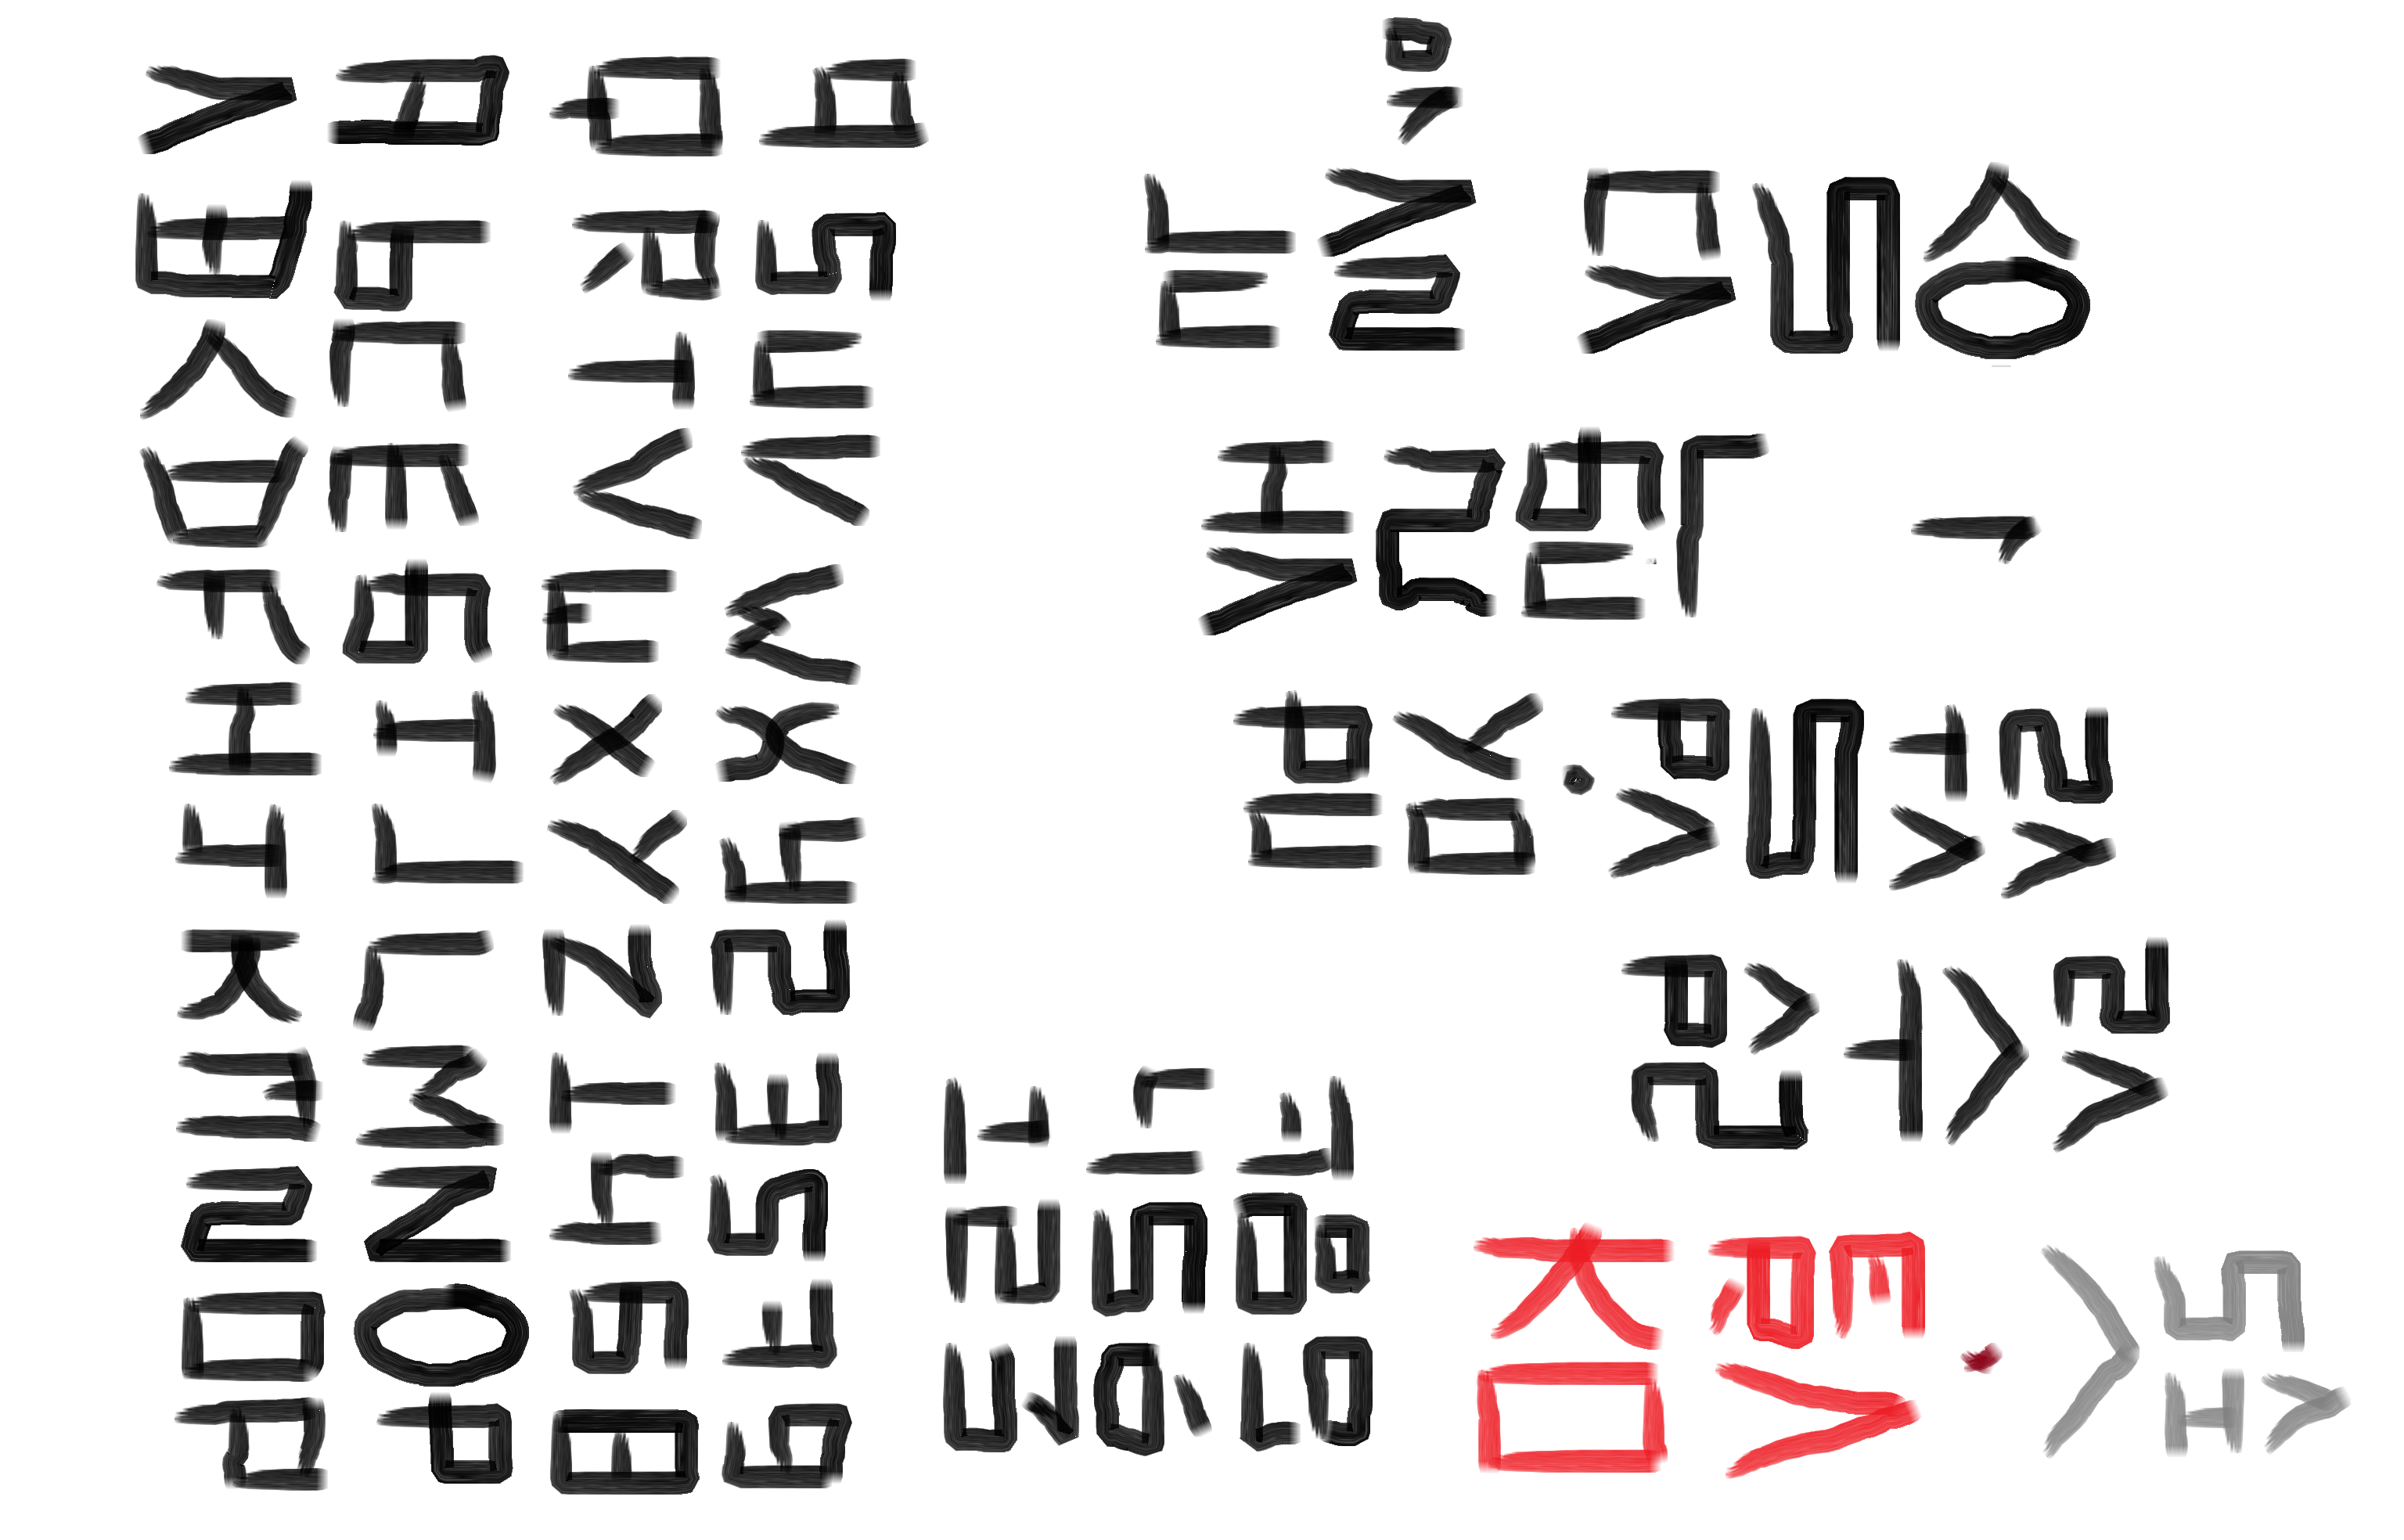 Корейская письменность хангыль шрифт